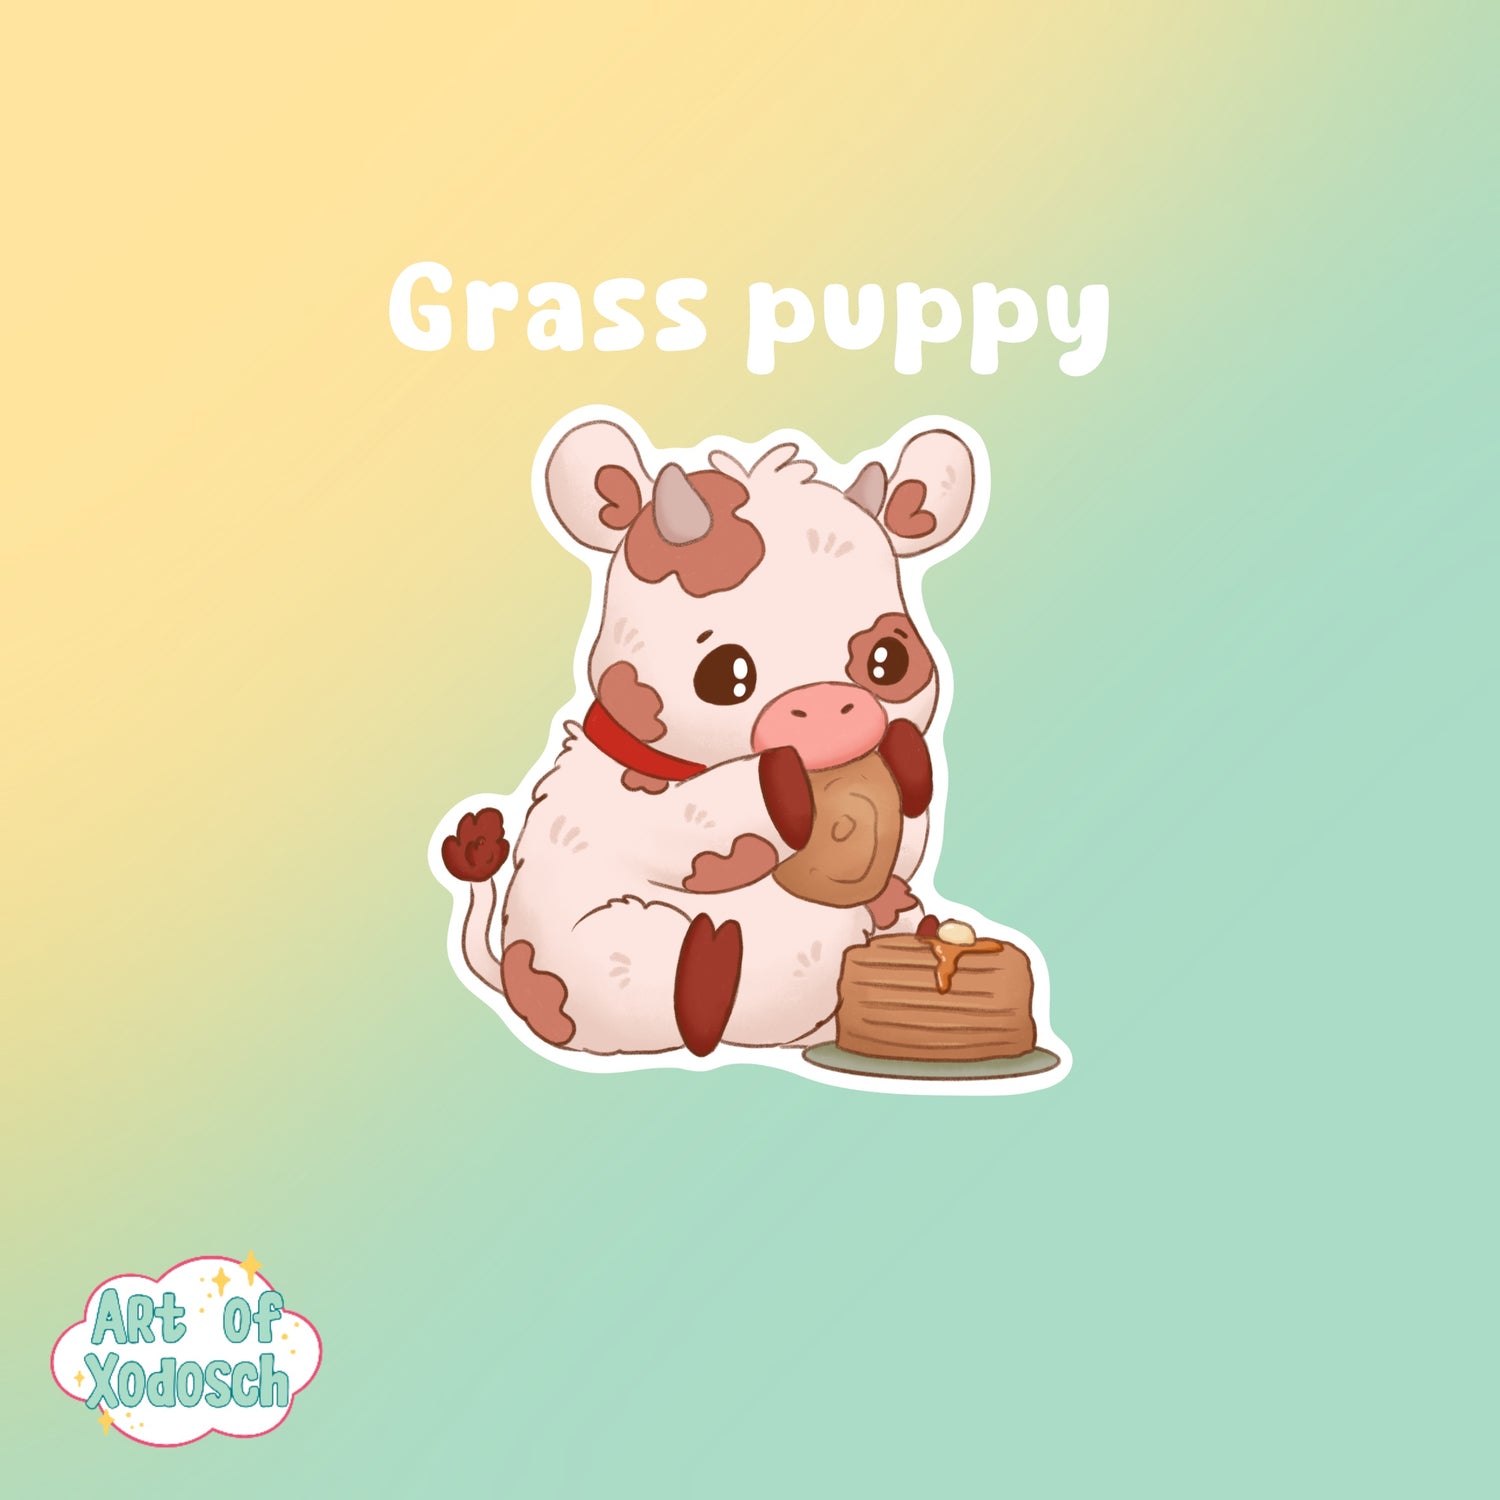 Grass puppy